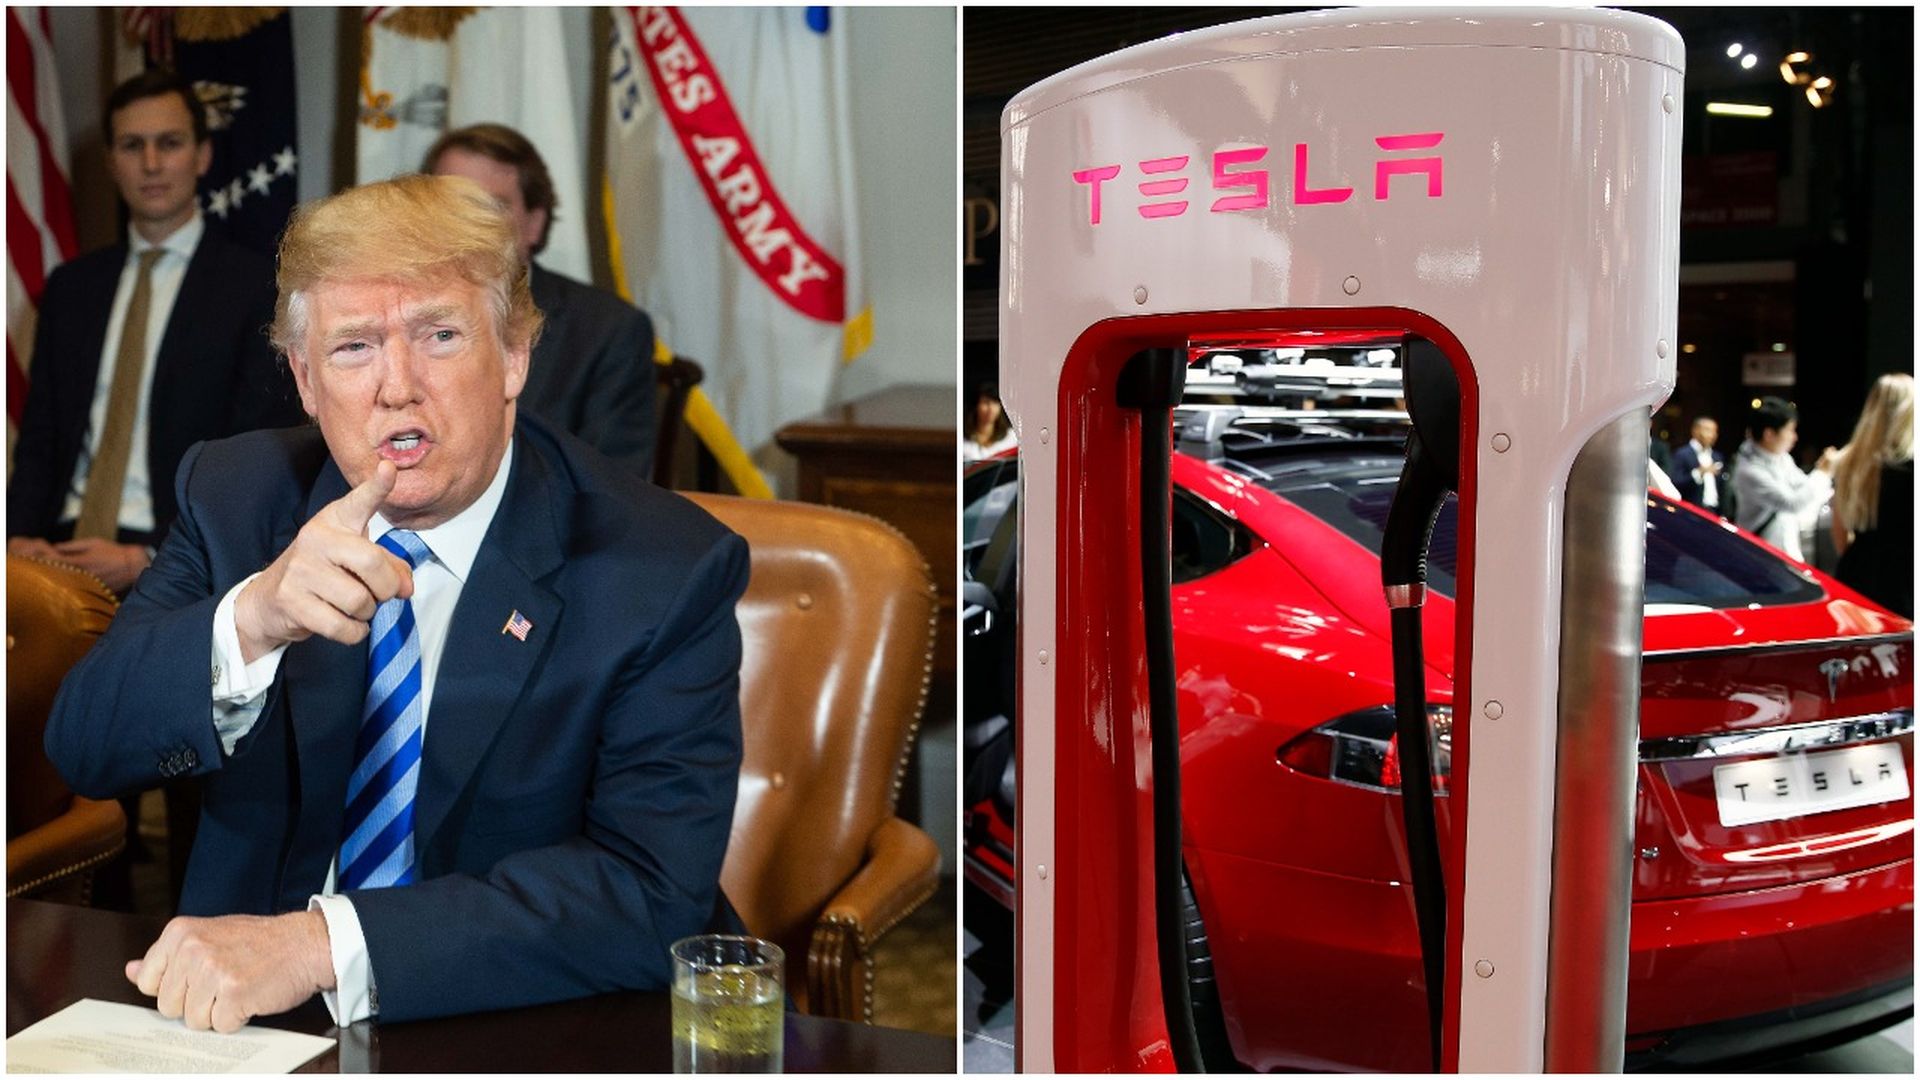 Trump and Tesla car charger